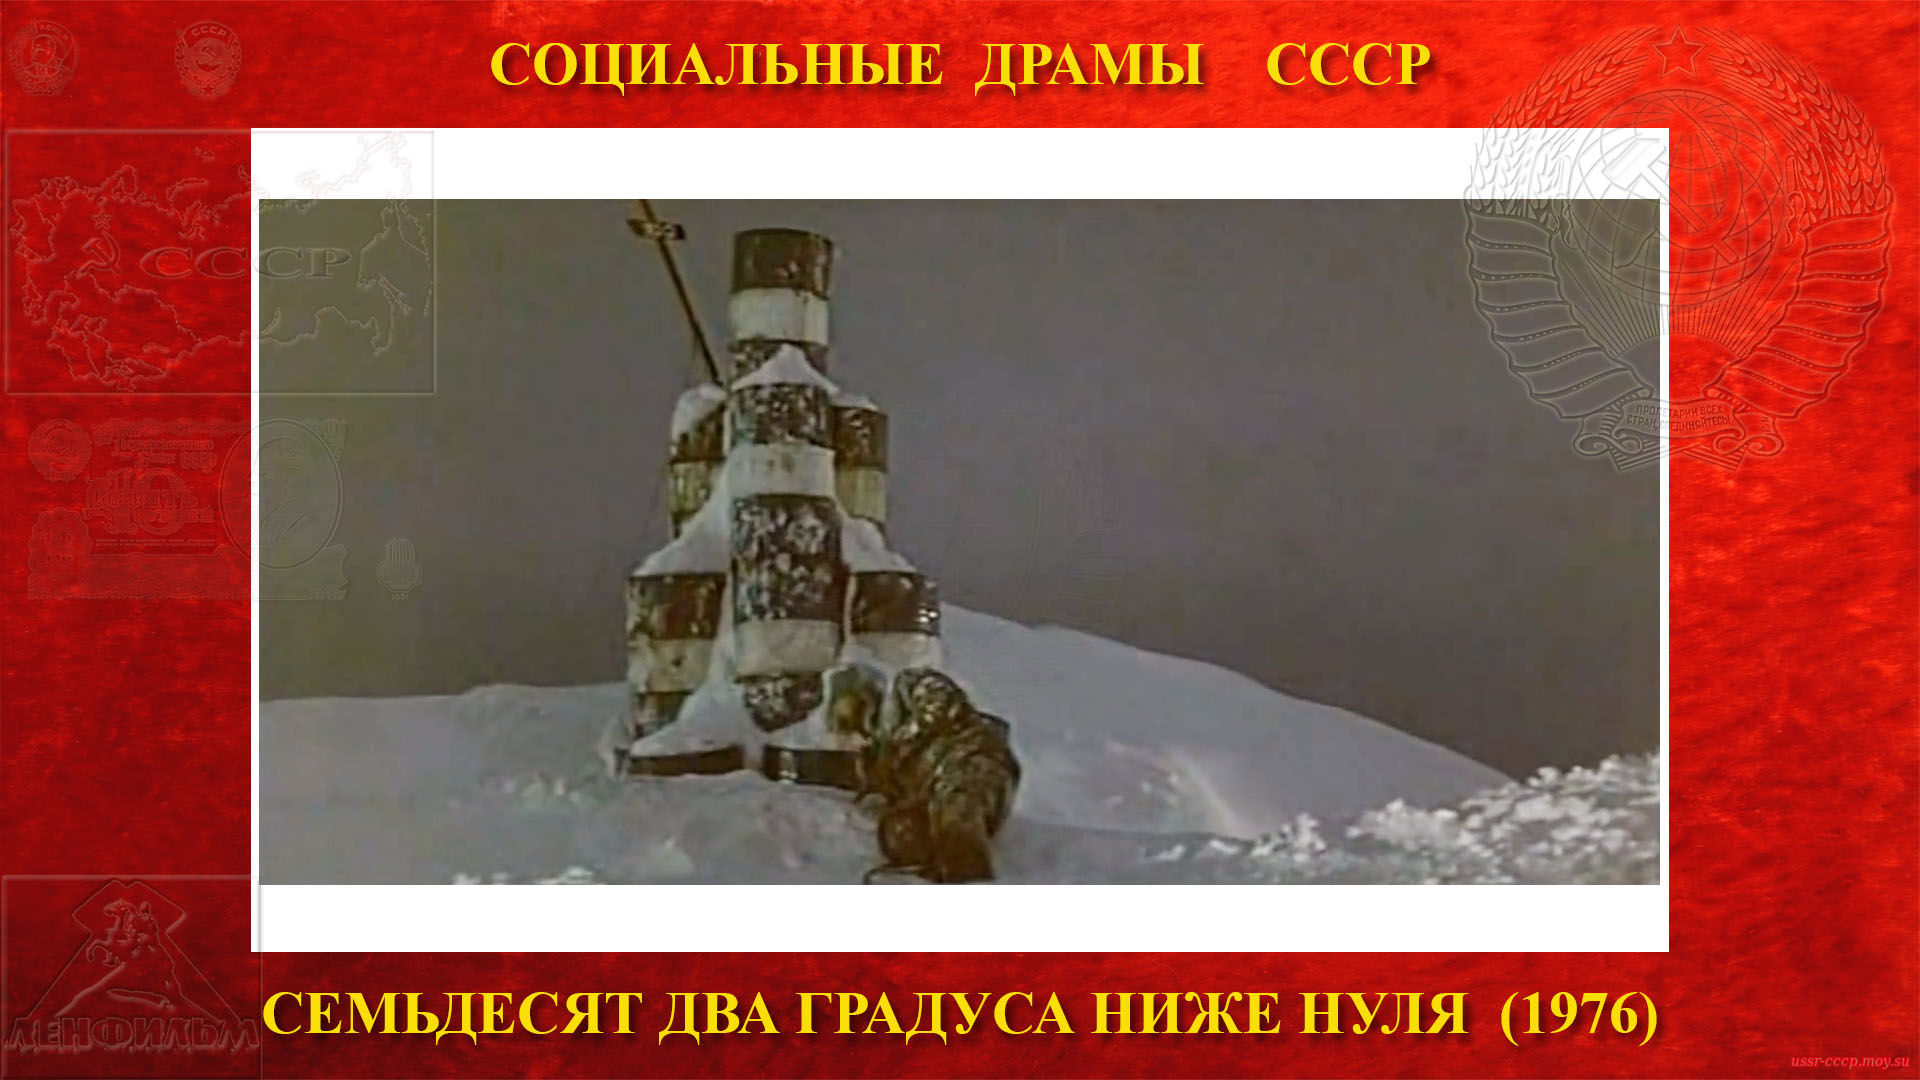 Семьдесят два градуса ниже нуля — Попов продолжает путь пешком и все-таки добирается до ворот, а потом выпускает в небо все имеющиеся у него ракеты. 